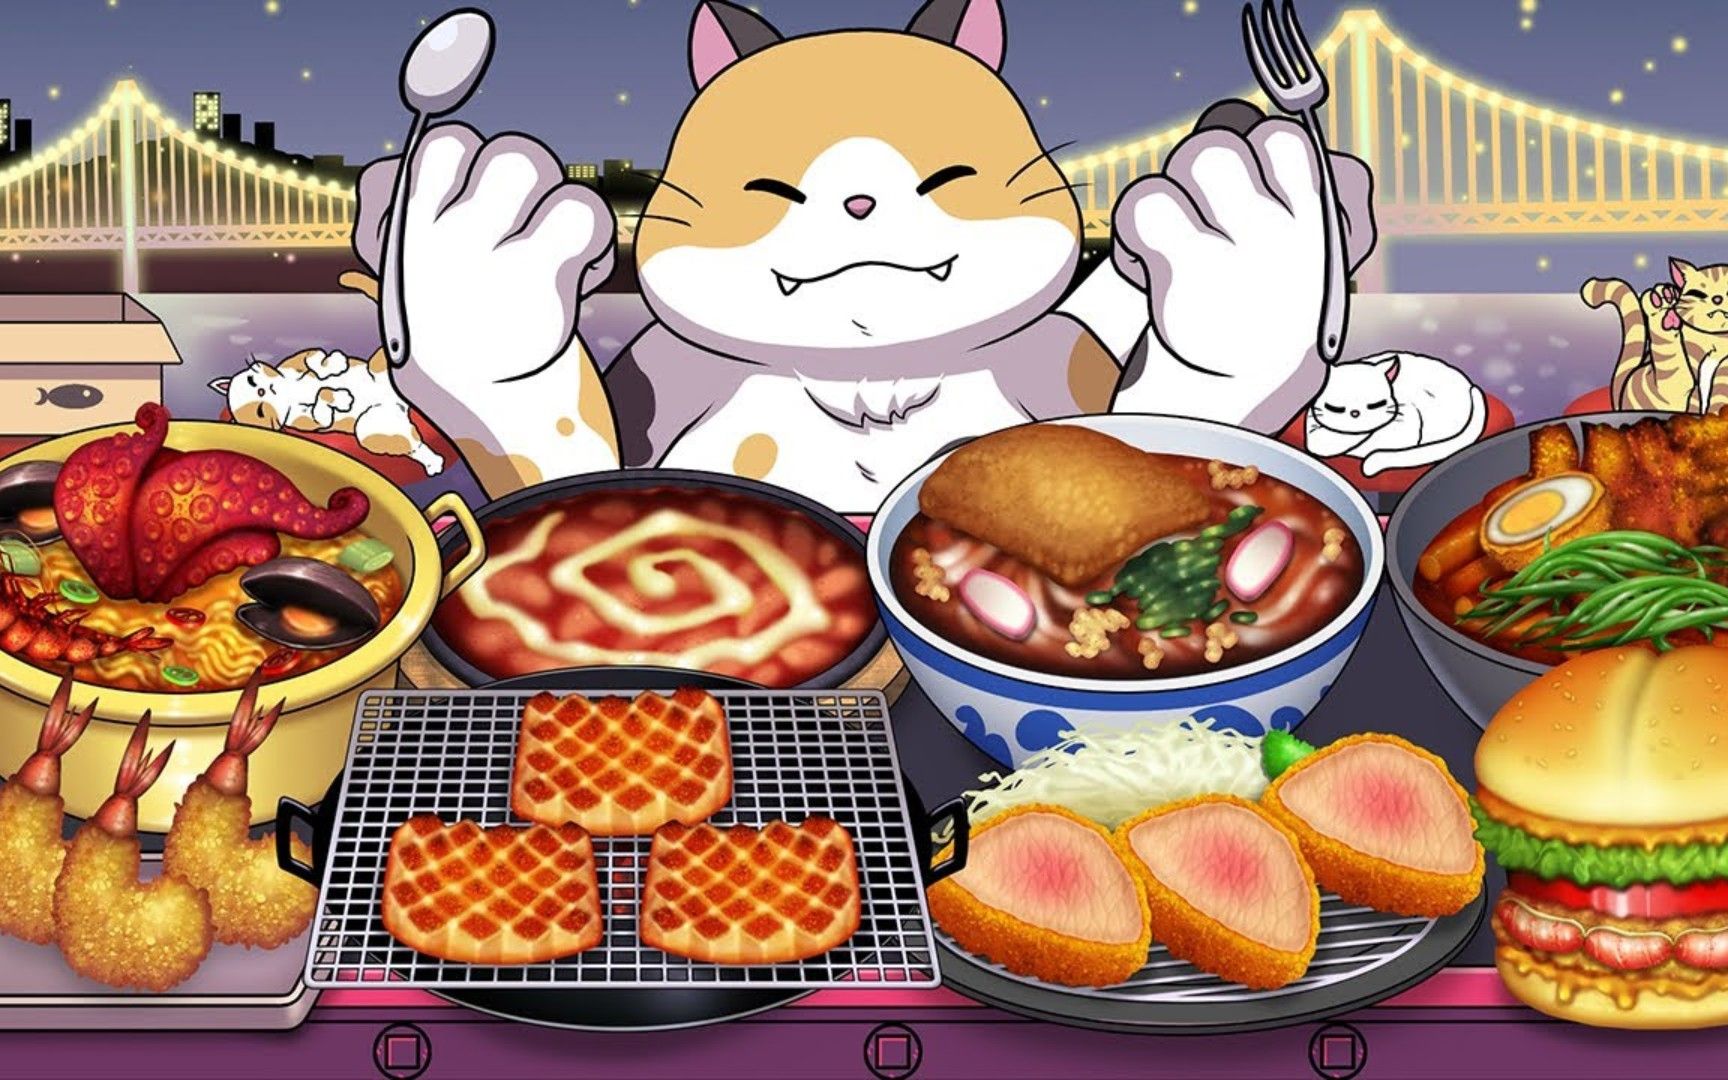 美食动画:料理猫王挑战快速流水席海鲜大餐,它能挑战成功吗?